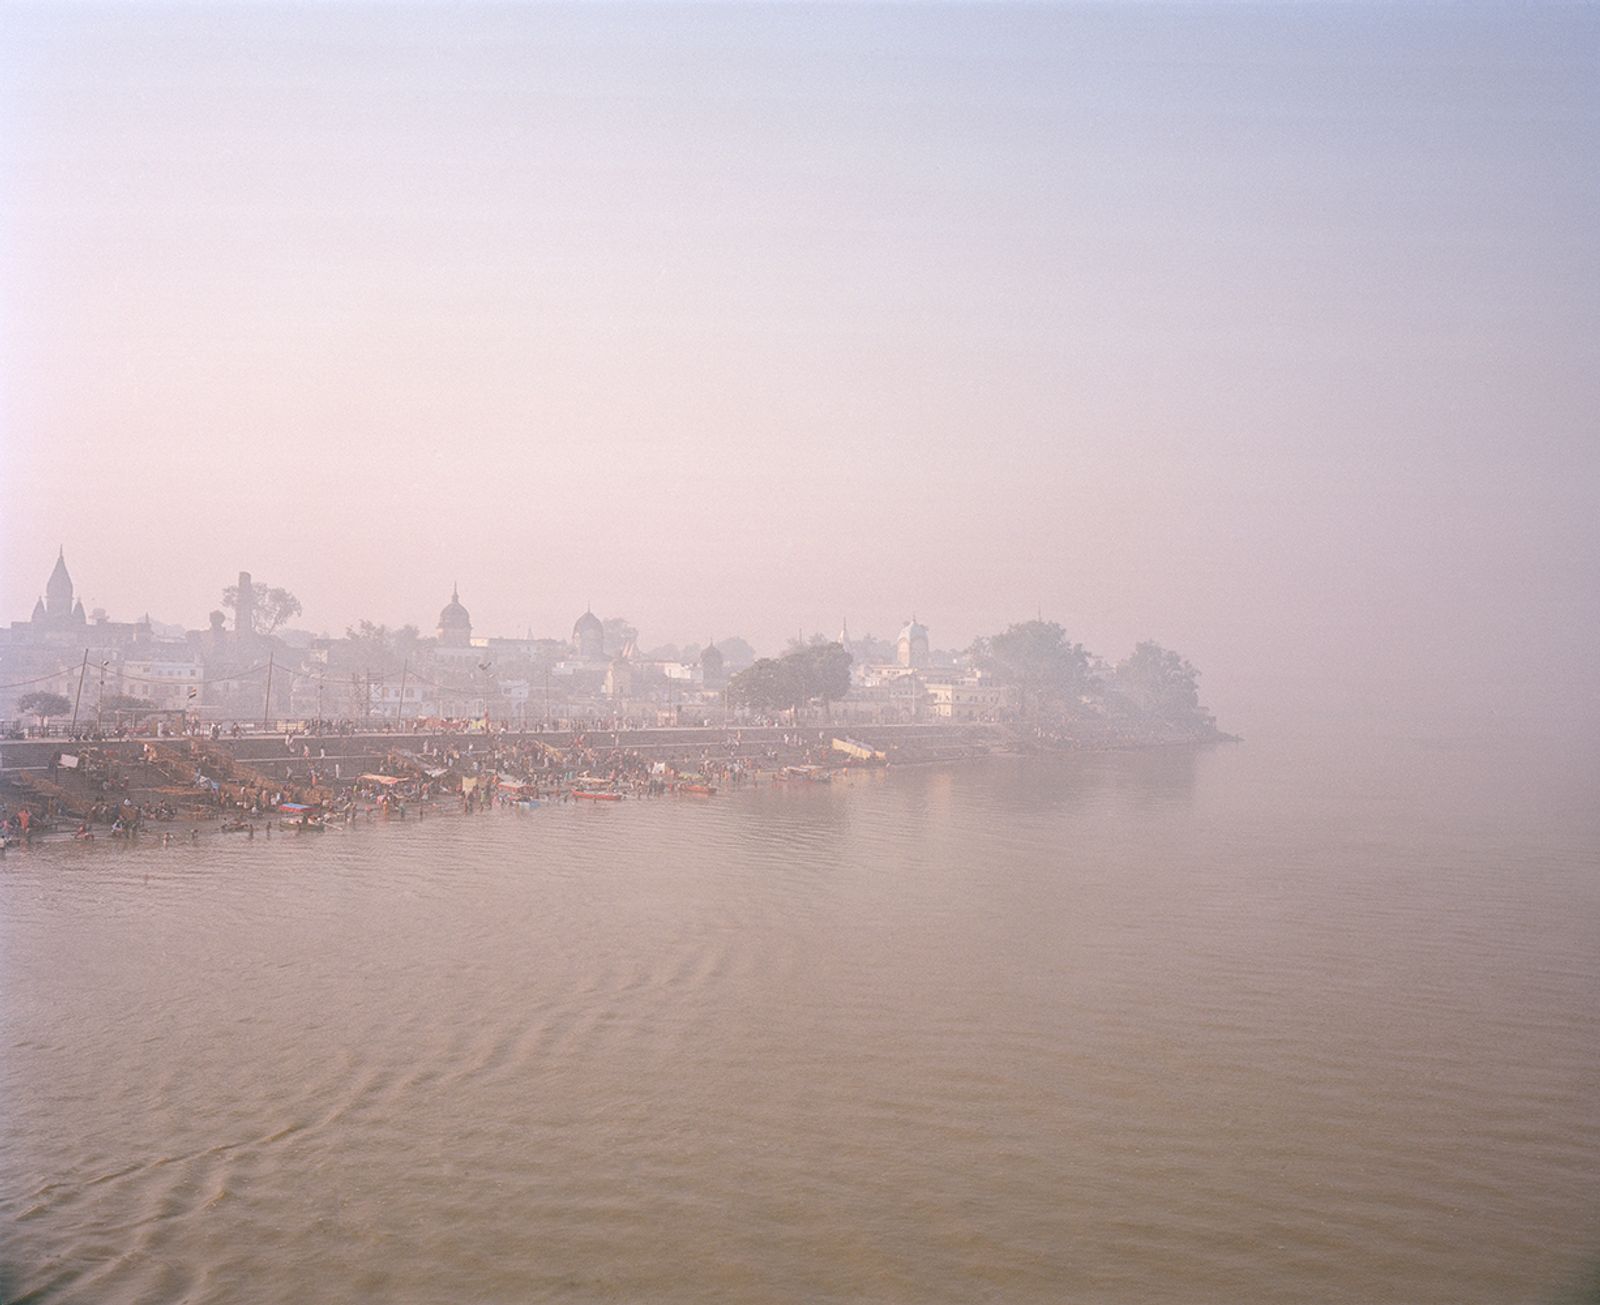 © Vasantha Yogananthan - Ayodhya, Uttar Pradesh, India, 2013